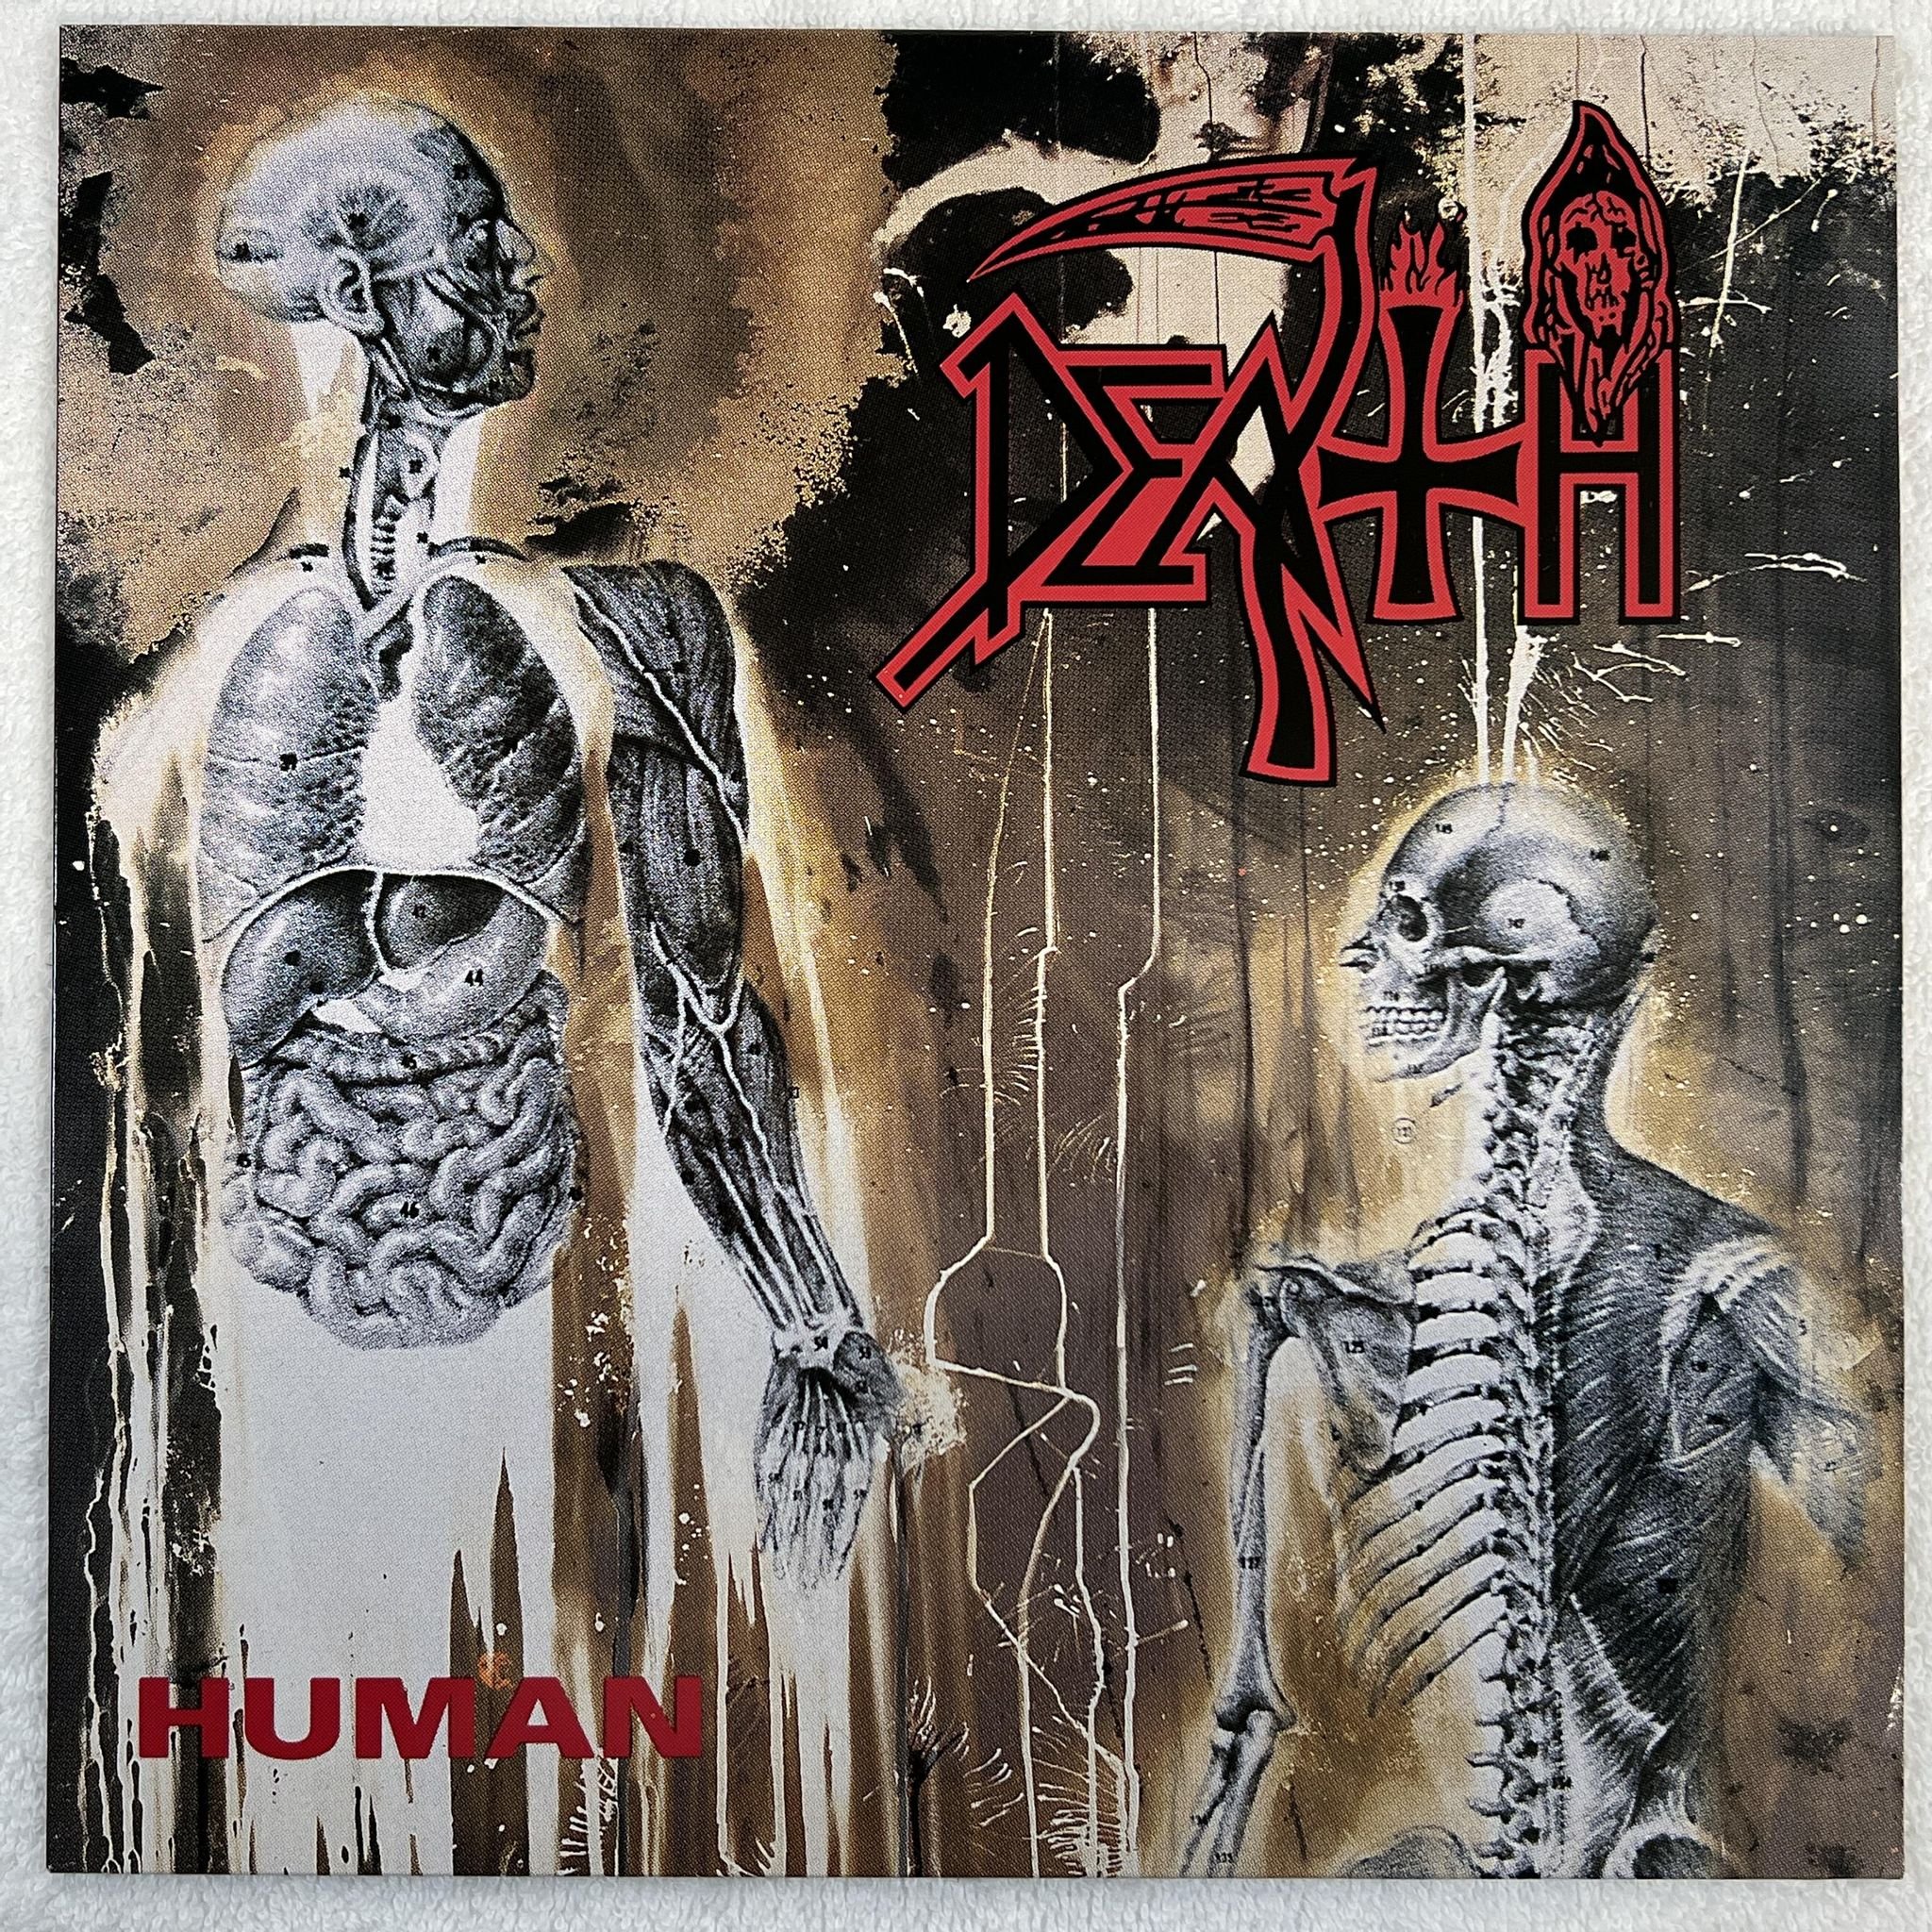 Omslagsbild för skivan DEATH human LP -91 R/C RC 9238 1 ***** mega rare death metal *****